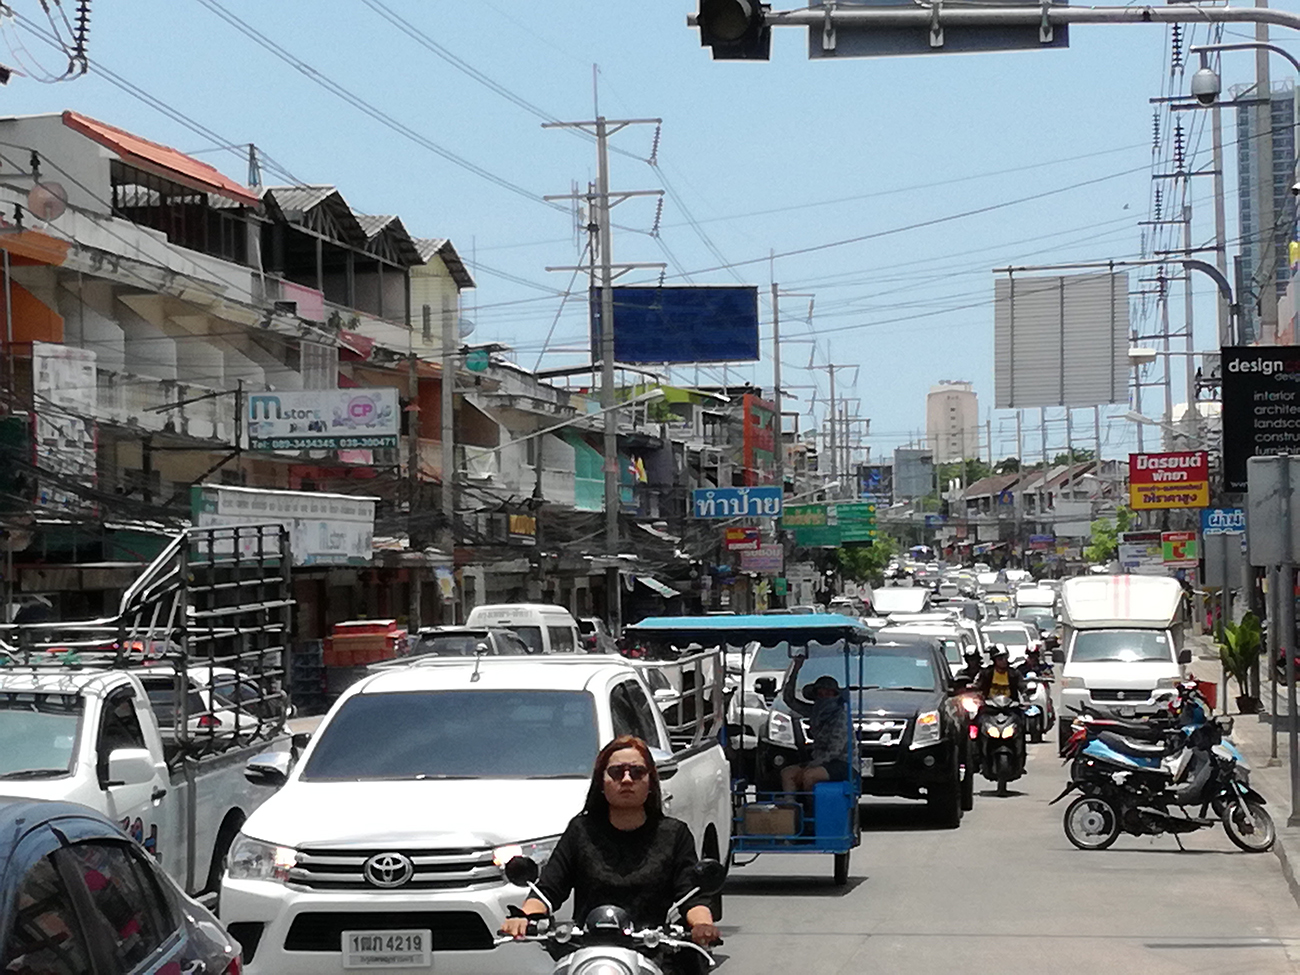 Медицинская справка необходима для получения водительских прав в Тайланде